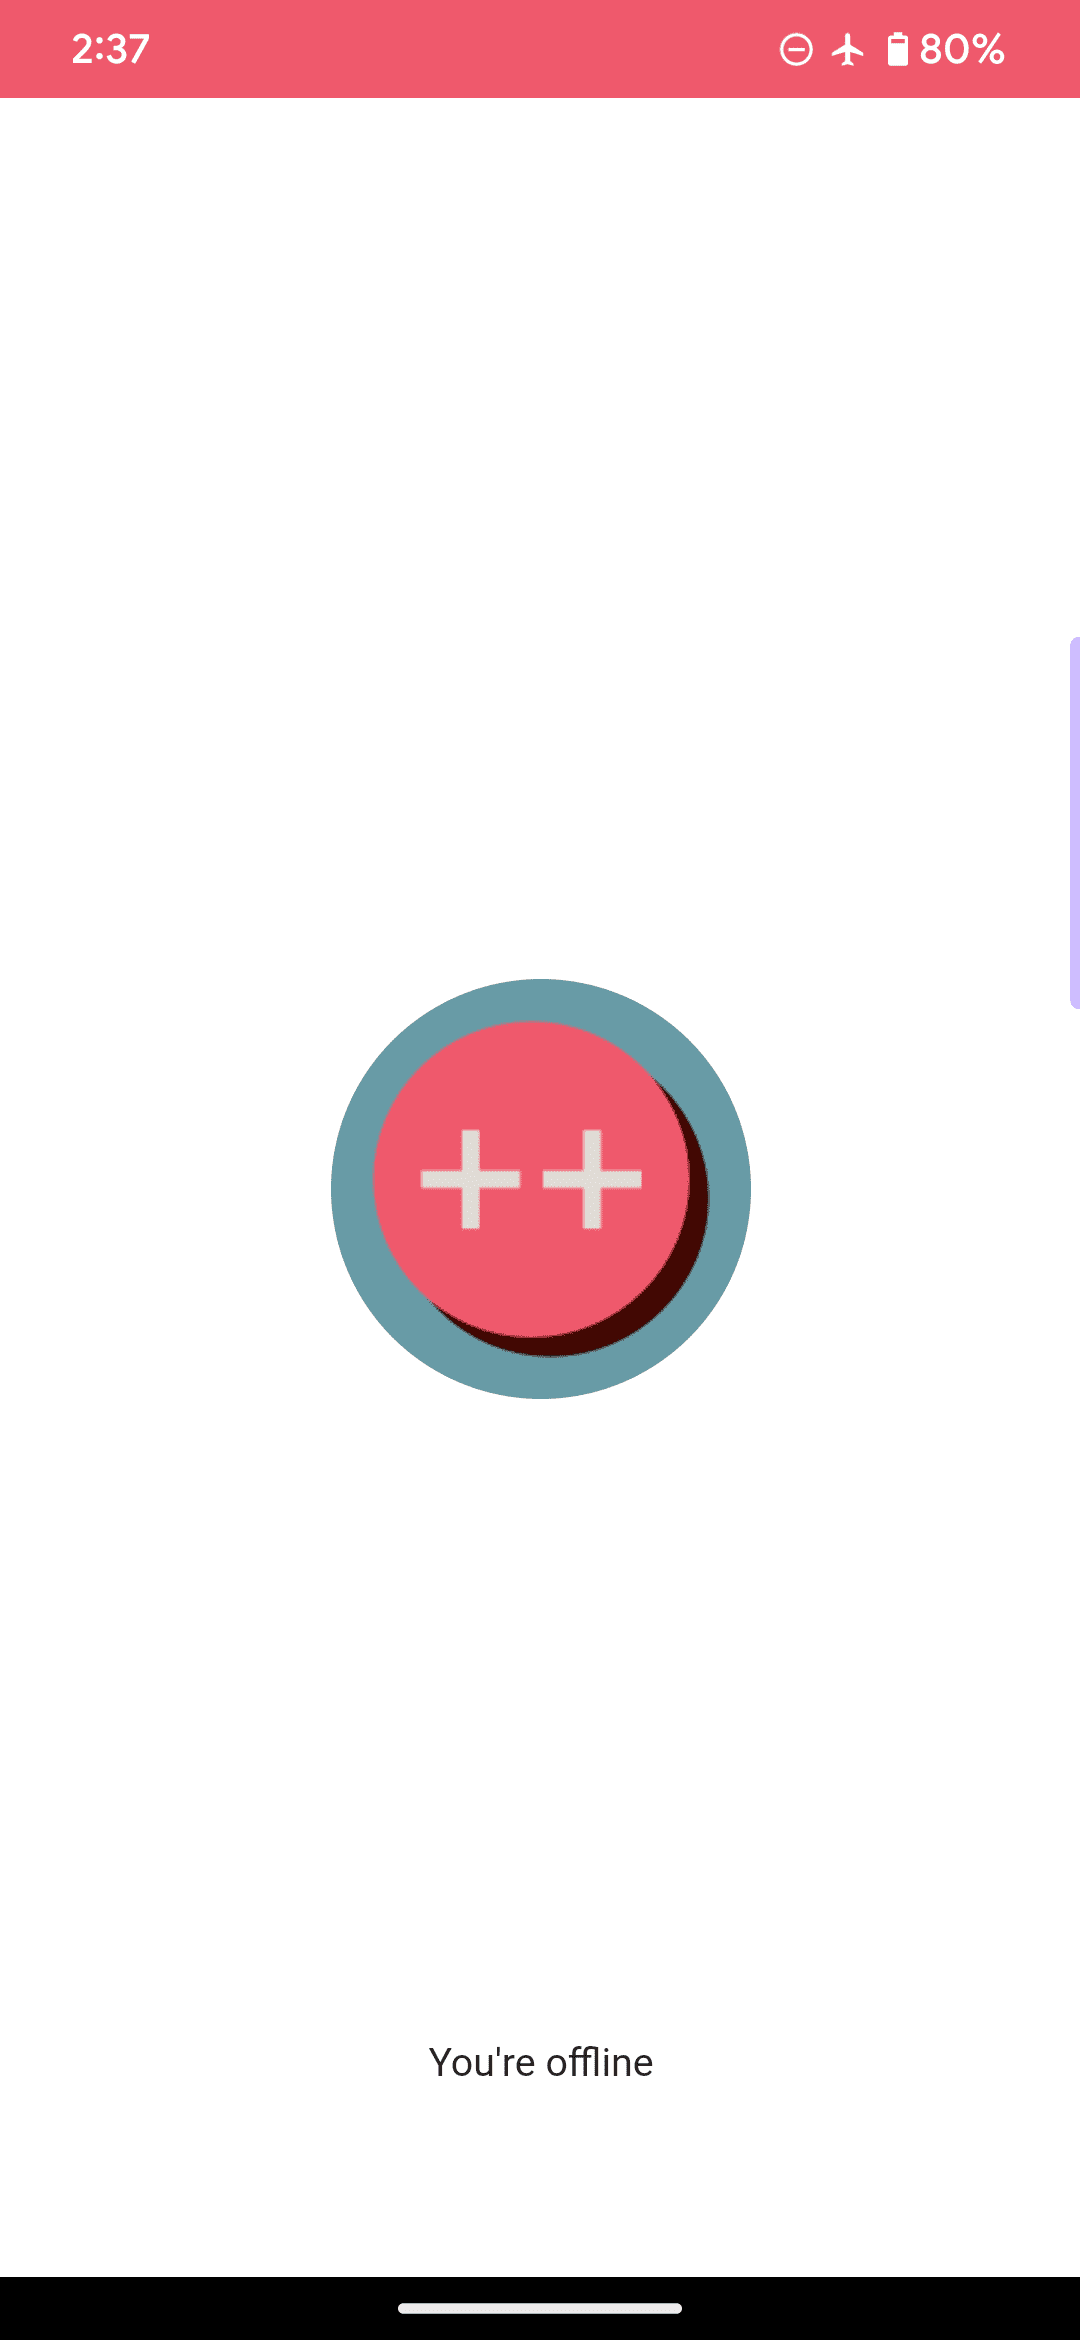 這是網頁應用程式預設的離線頁面，其中的標誌是粉紅色的圓圈和兩個加號，並加上「你目前處於離線狀態」訊息。